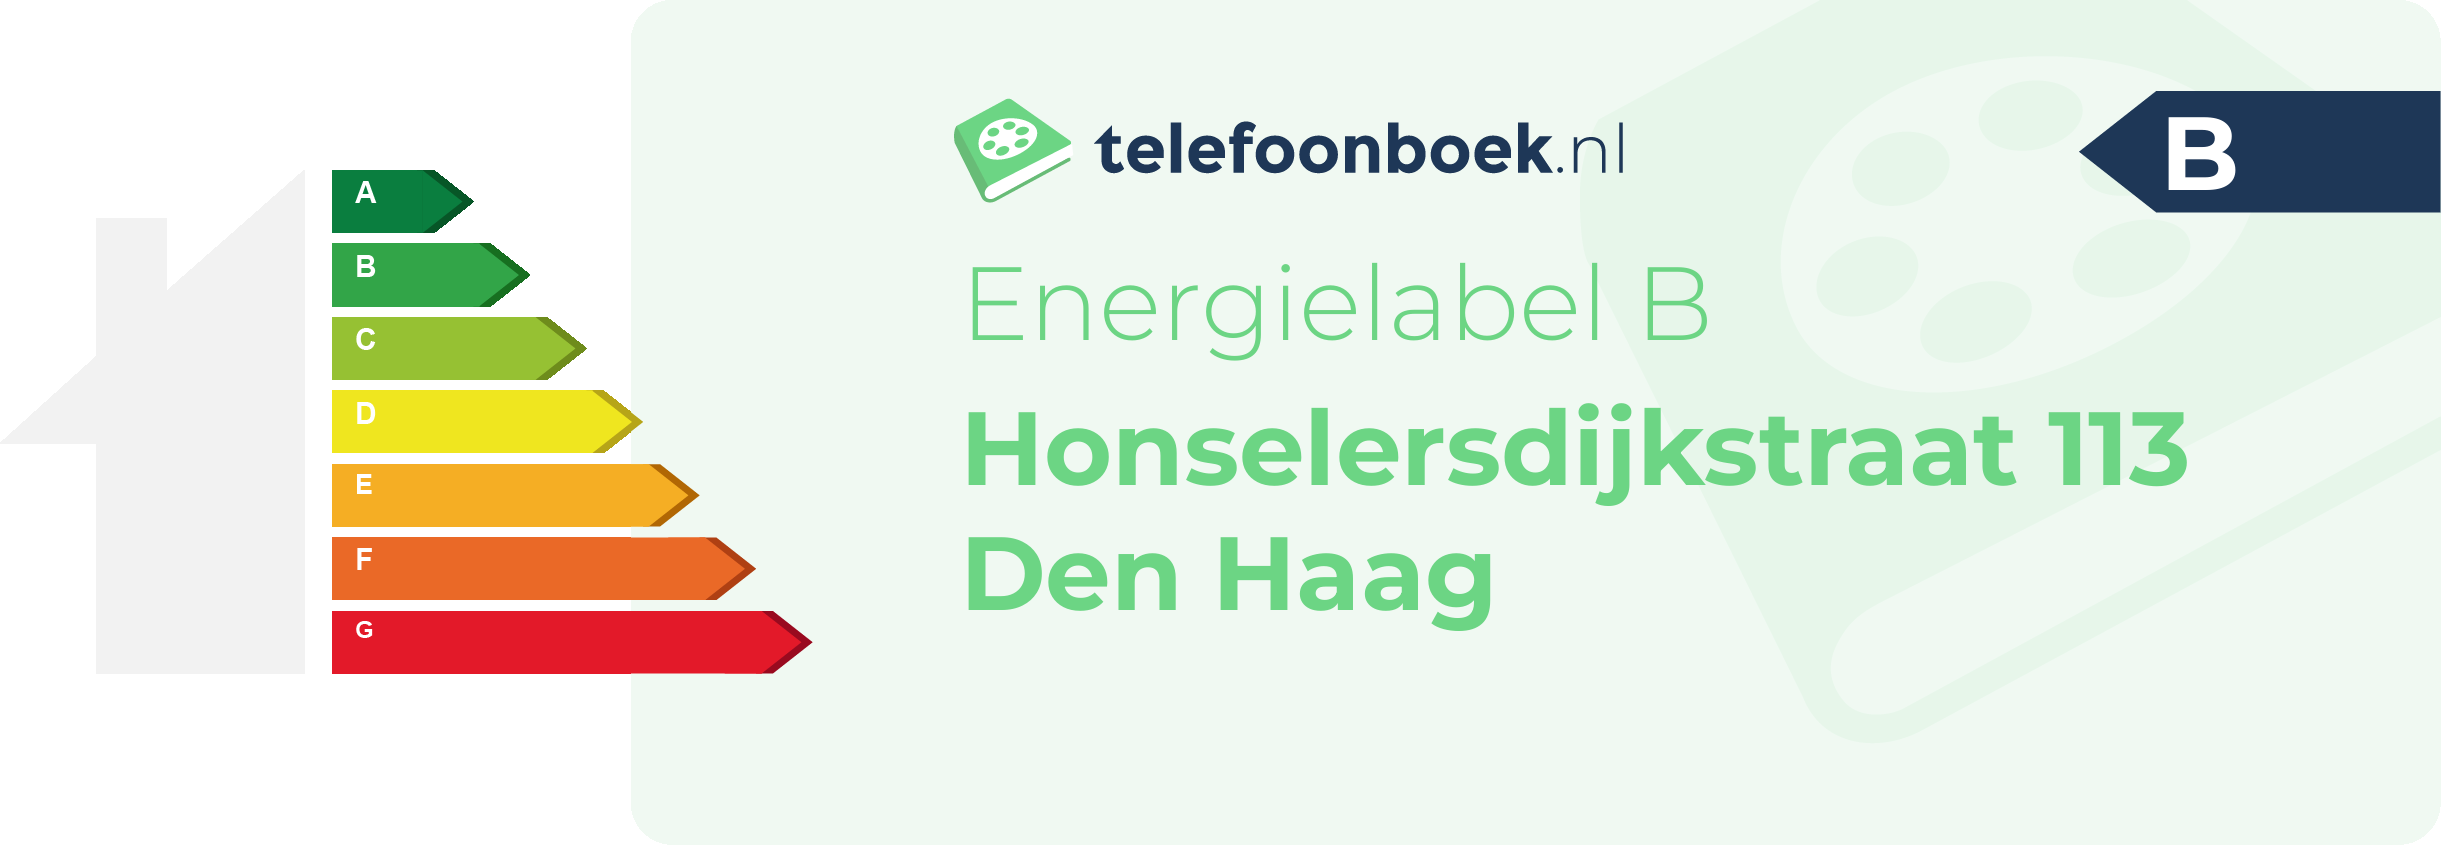 Energielabel Honselersdijkstraat 113 Den Haag